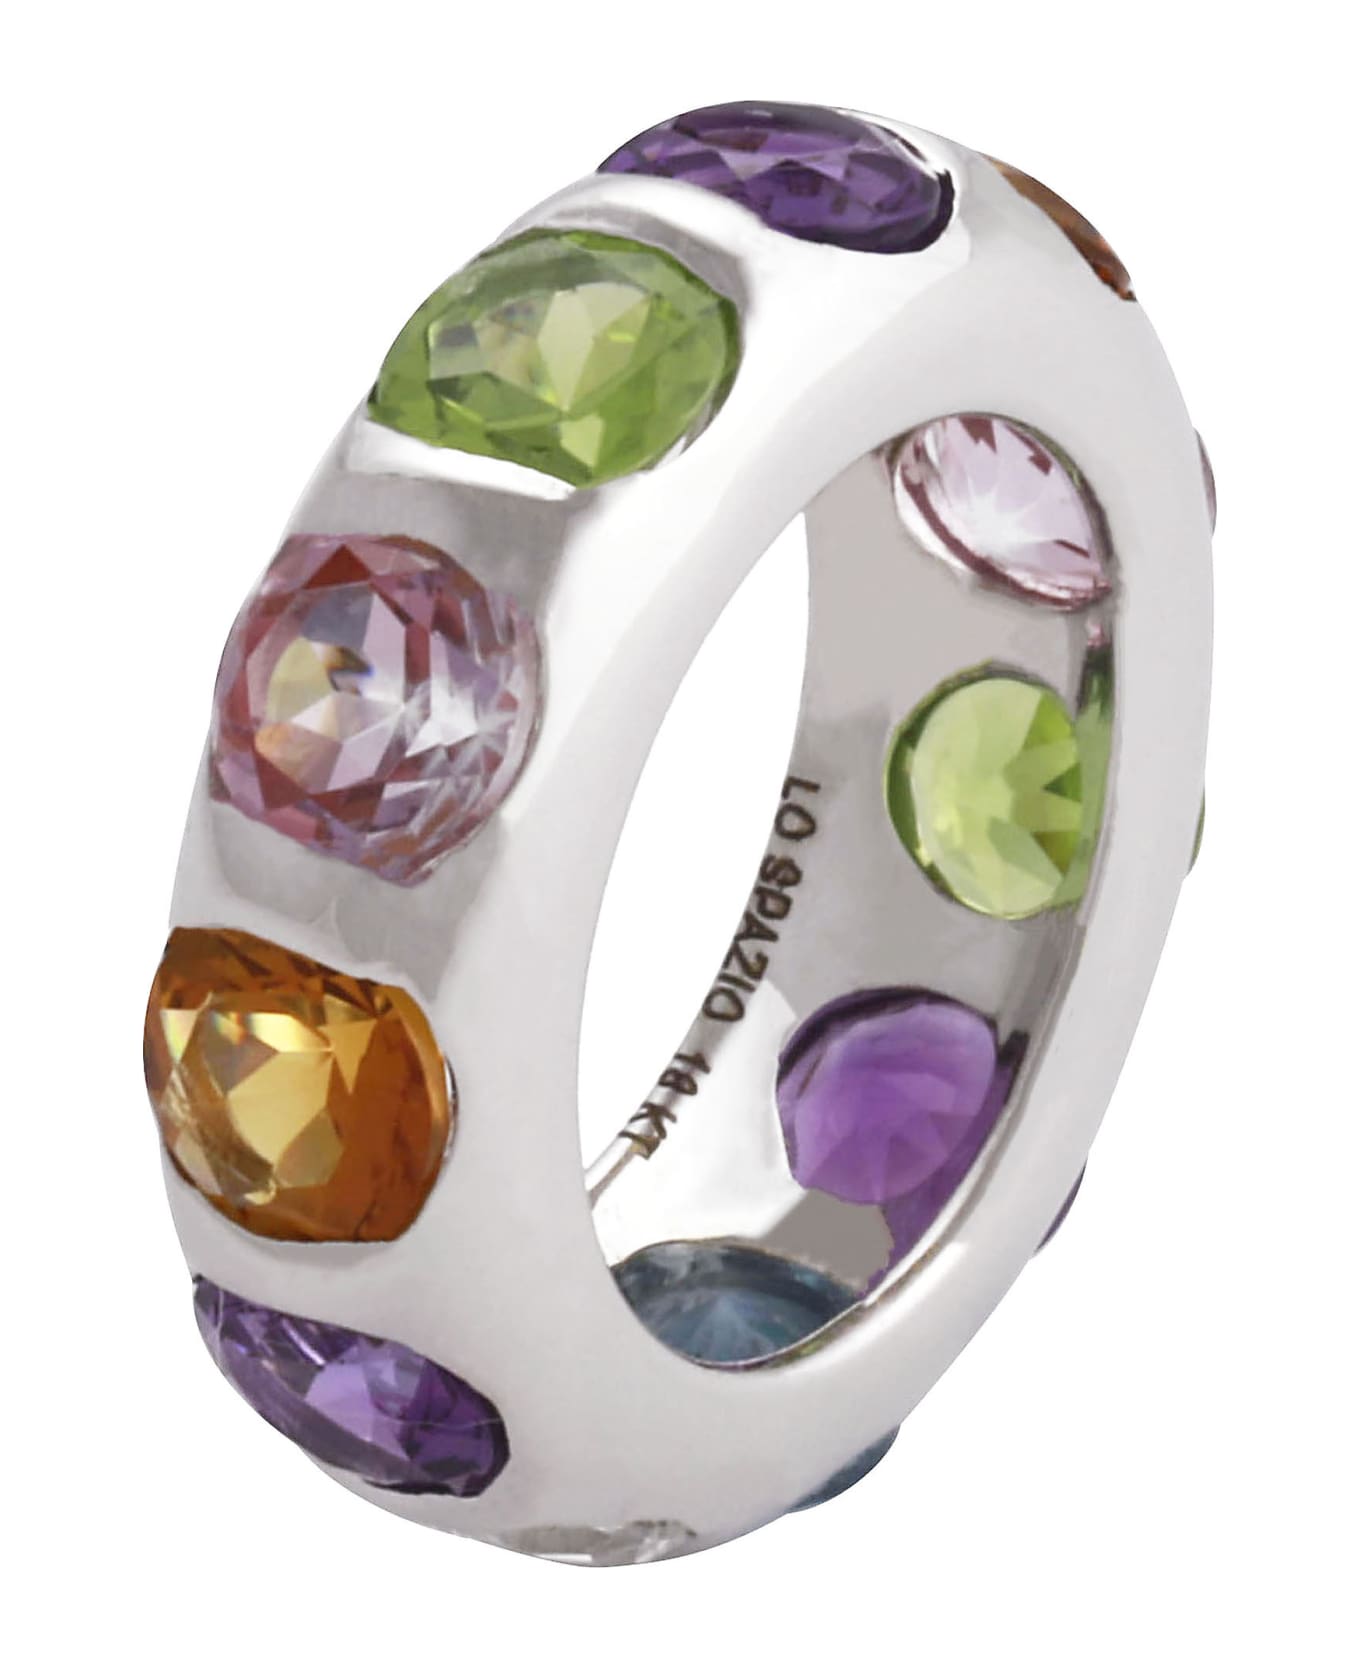 Lo Spazio Jewelry Lo Spazio Primavera Ring - Multicolor